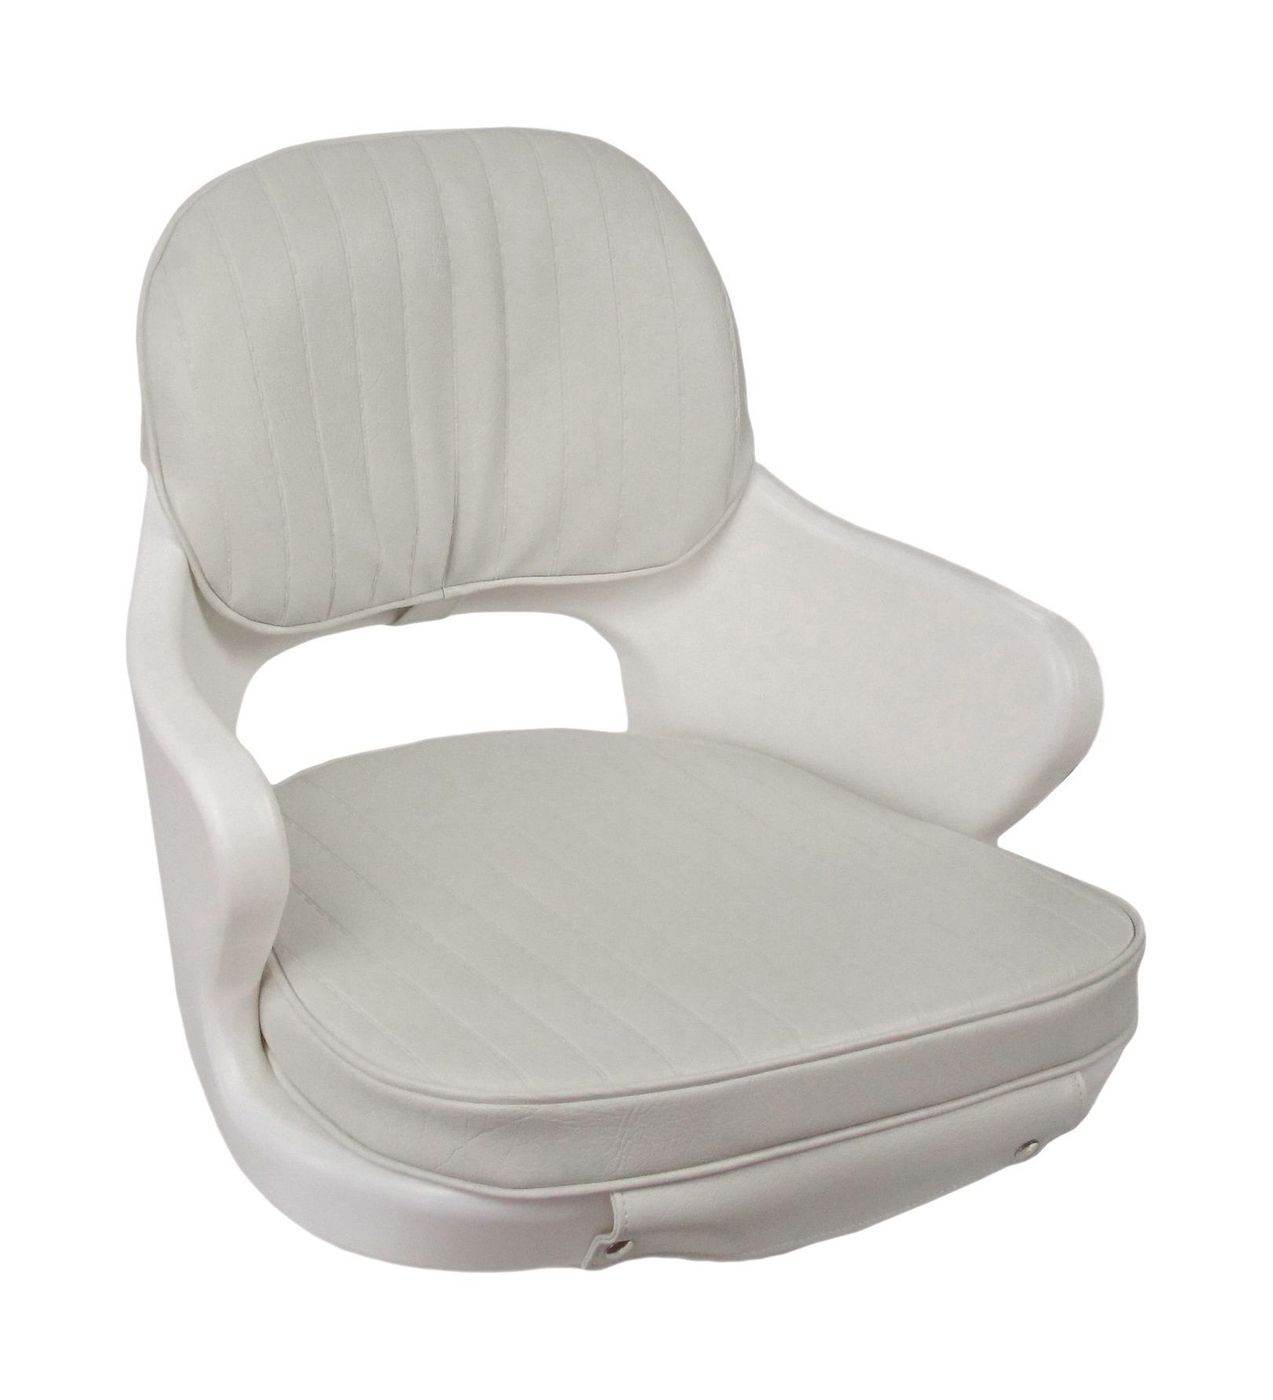 Кресло YACHTSMAN мягкое, съемные подушки, материал белый винил 1060410C кресло romeo мягкое подставка обивка белый винил 118100010